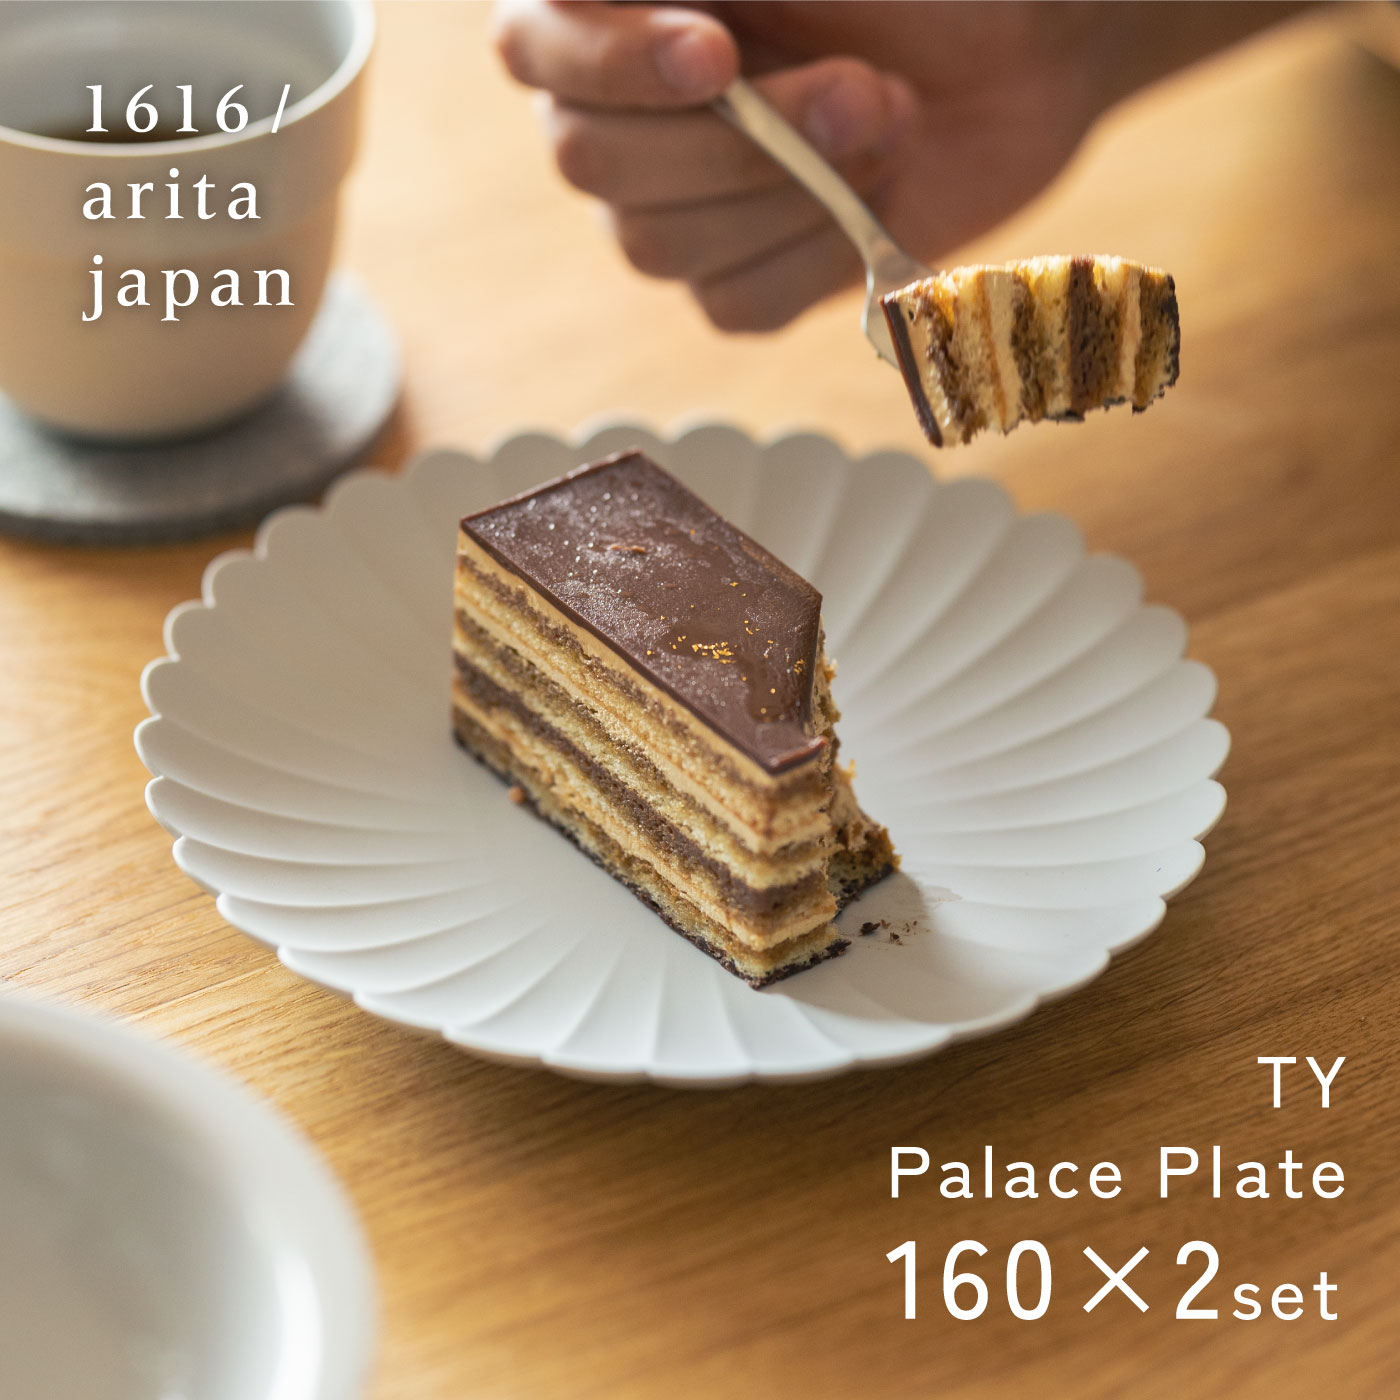 【楽天市場】1616/arita japan TY パレスプレート 160 [レビュー特典 